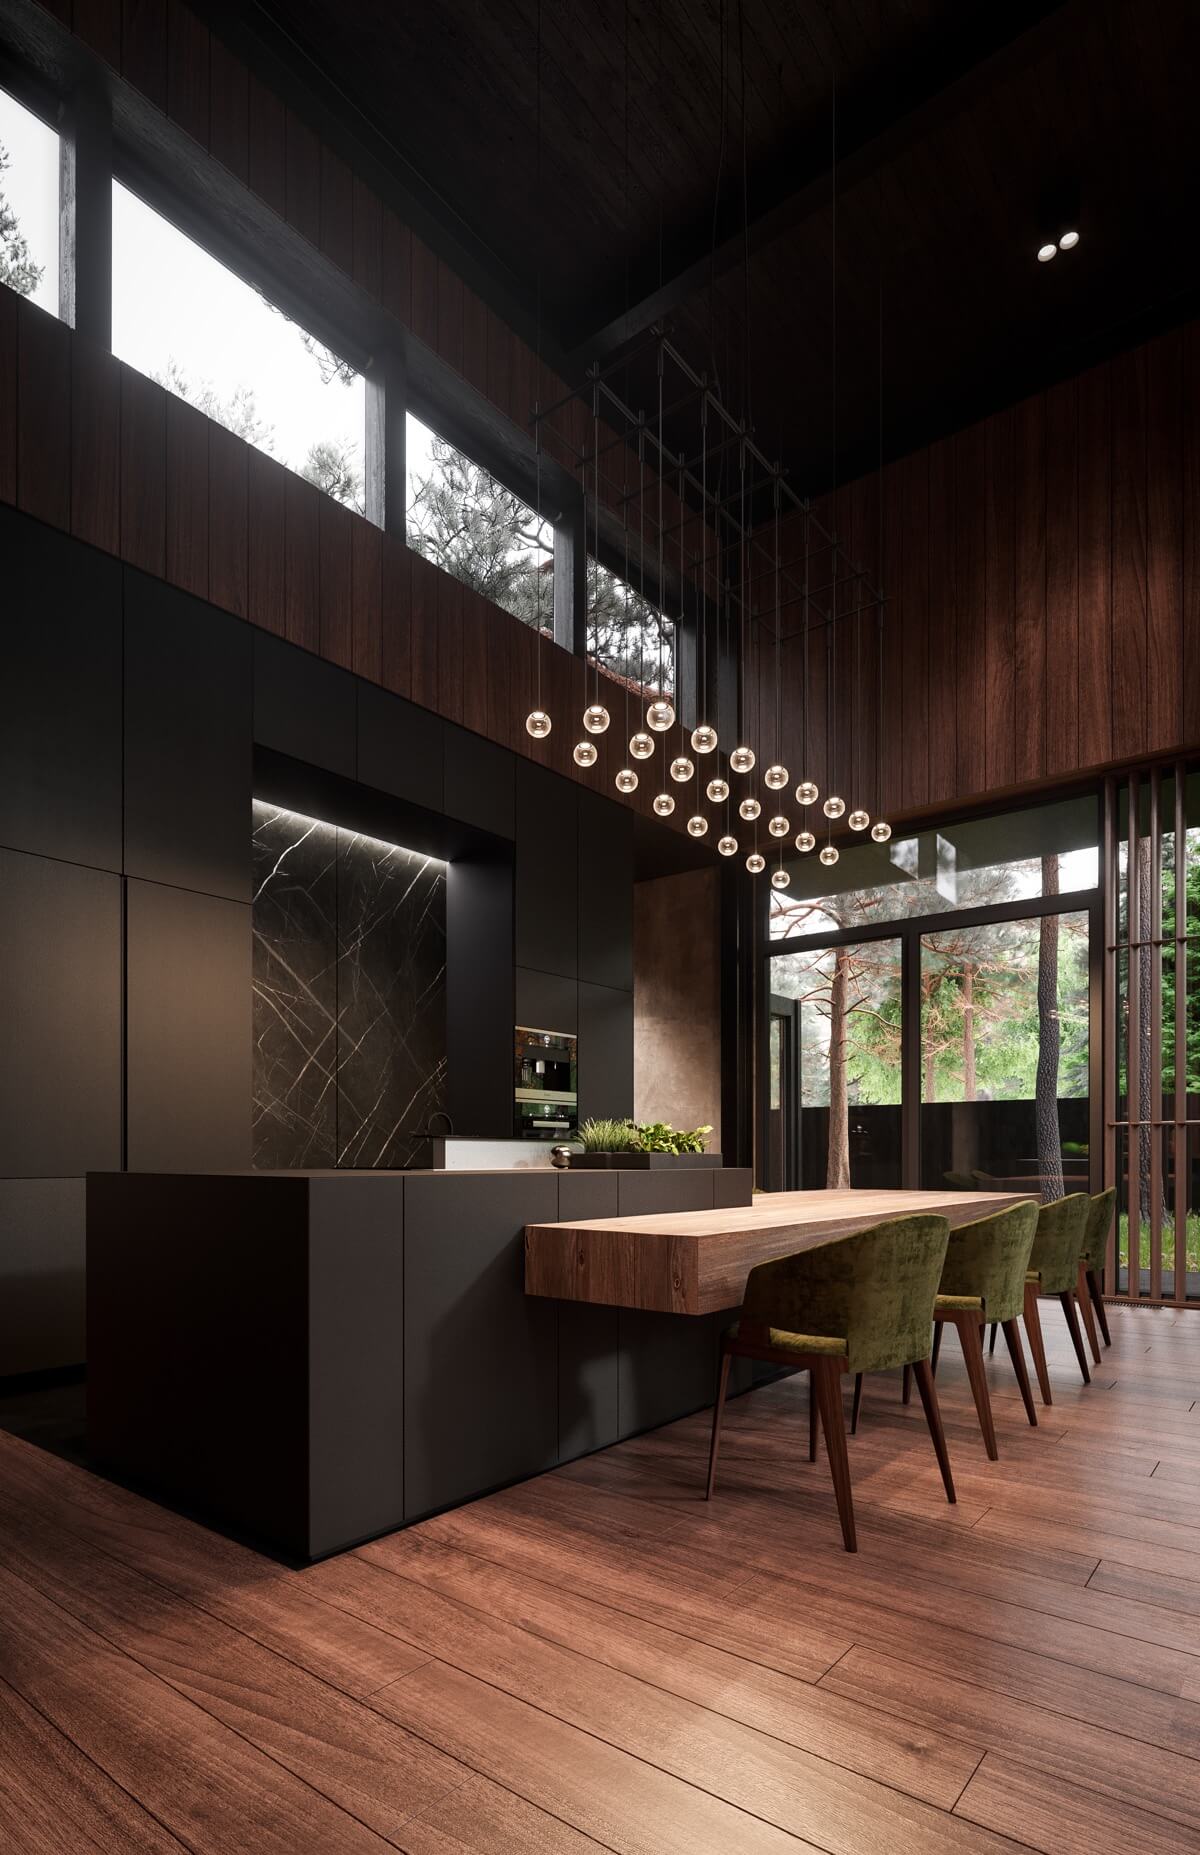 thiết kế nội thất nhà bếp hiện đại luxury 6